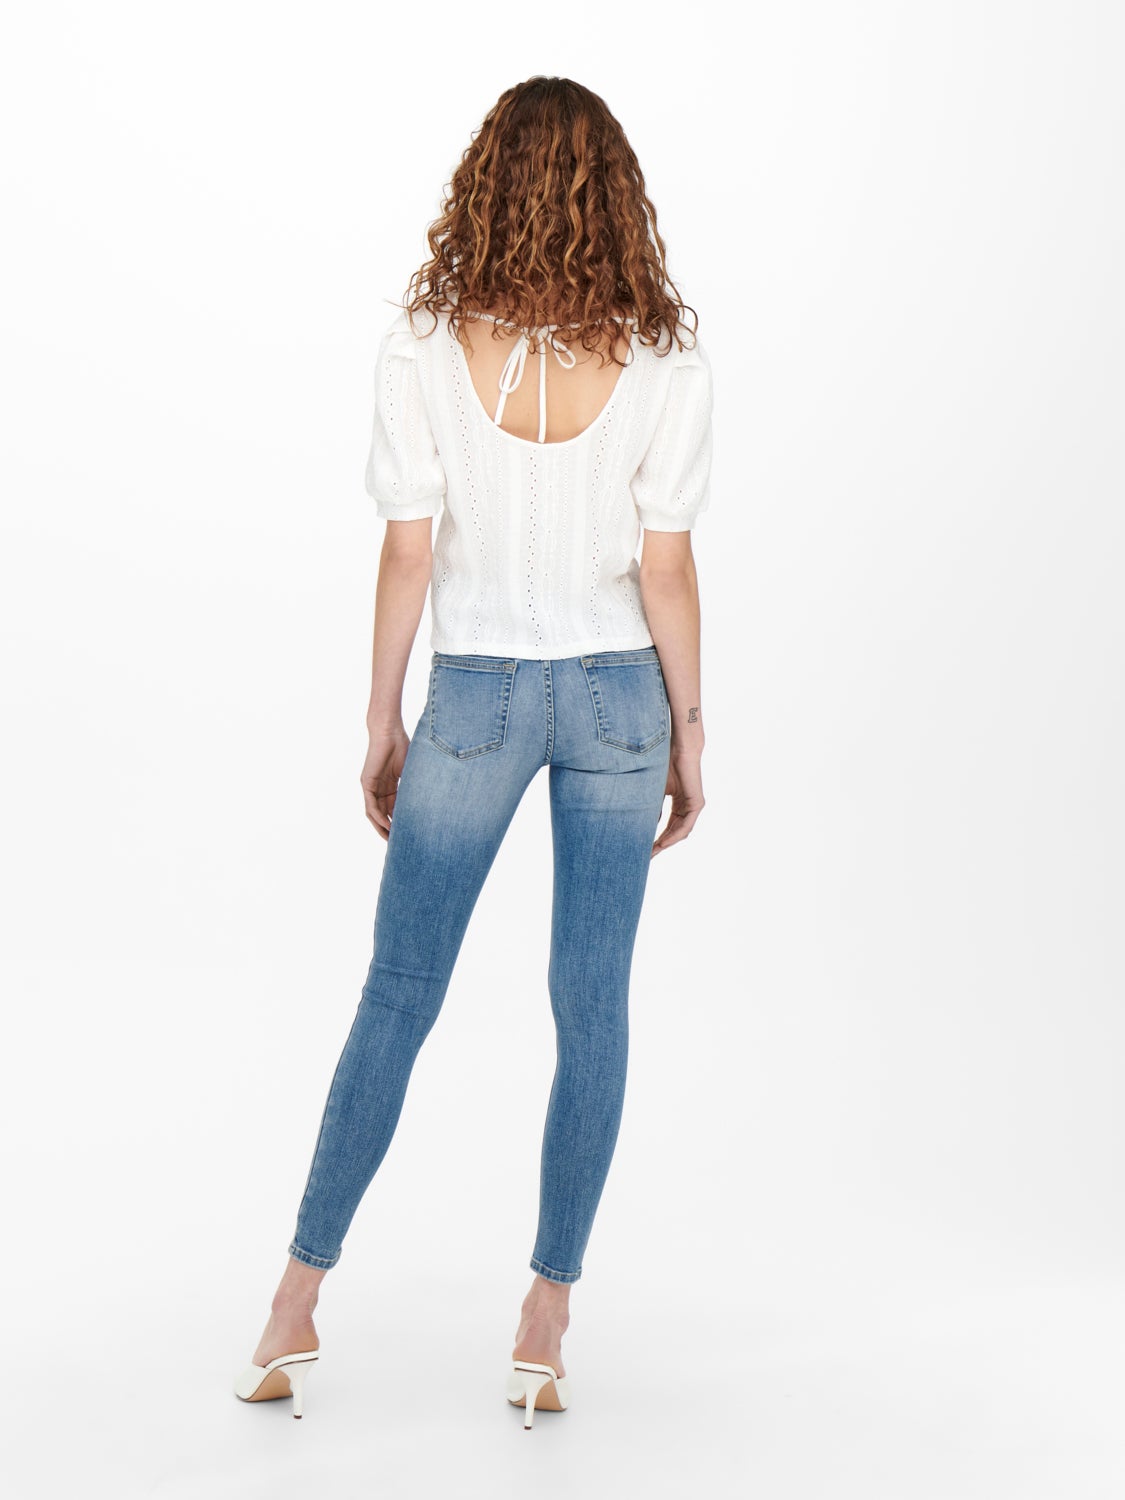 DAMEN Jeans Basisch Blau 40 Rabatt 95 % Stradivarius Jegging & Skinny & Slim 